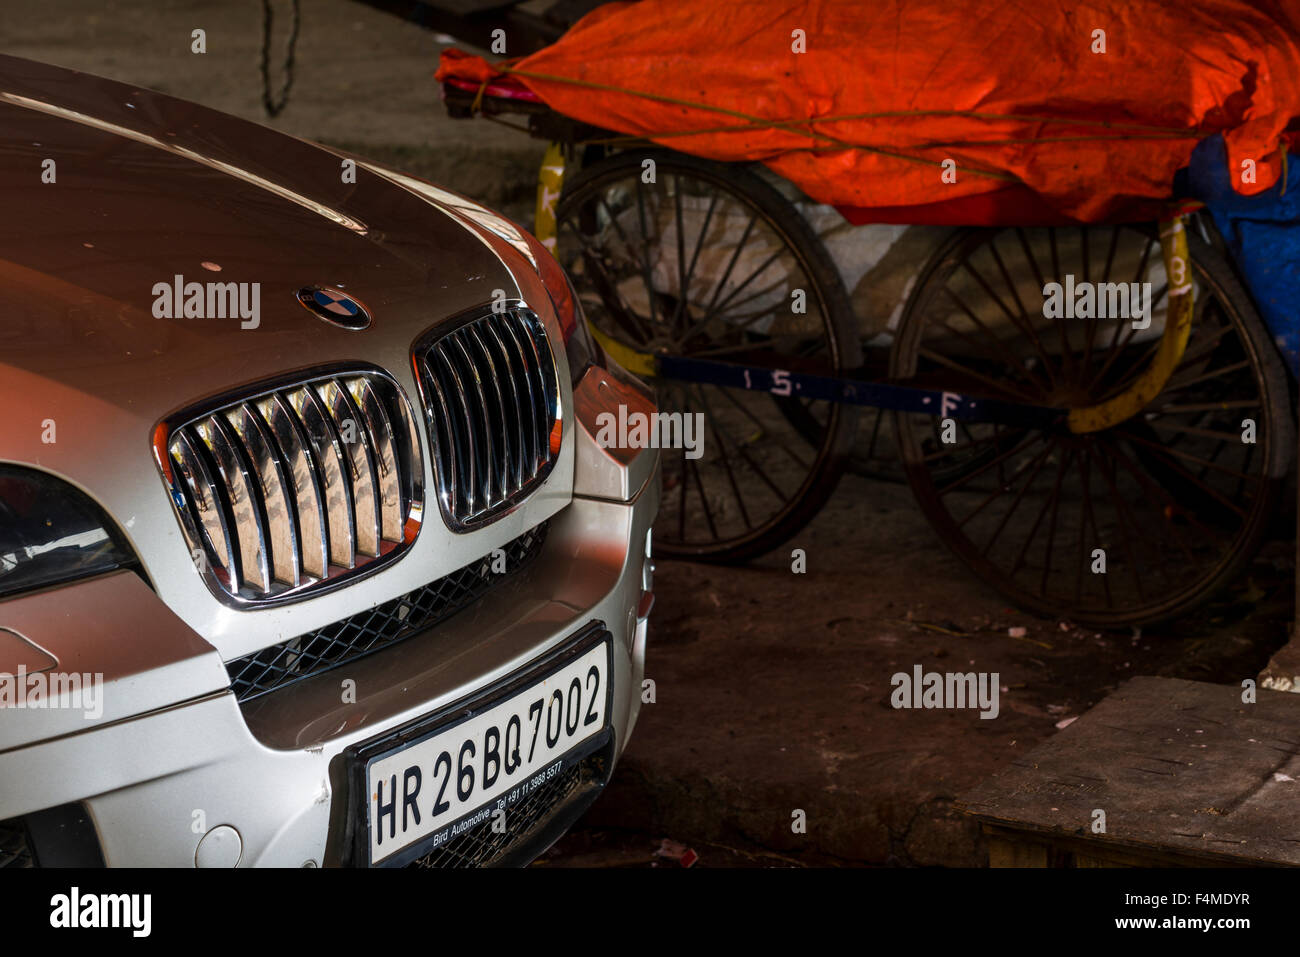 La parte anteriore di un tedesco della BMW auto con un numero di maharasthra piastra, un tipico simbolo di status per la ricca borghesia indiani, in contras Foto Stock